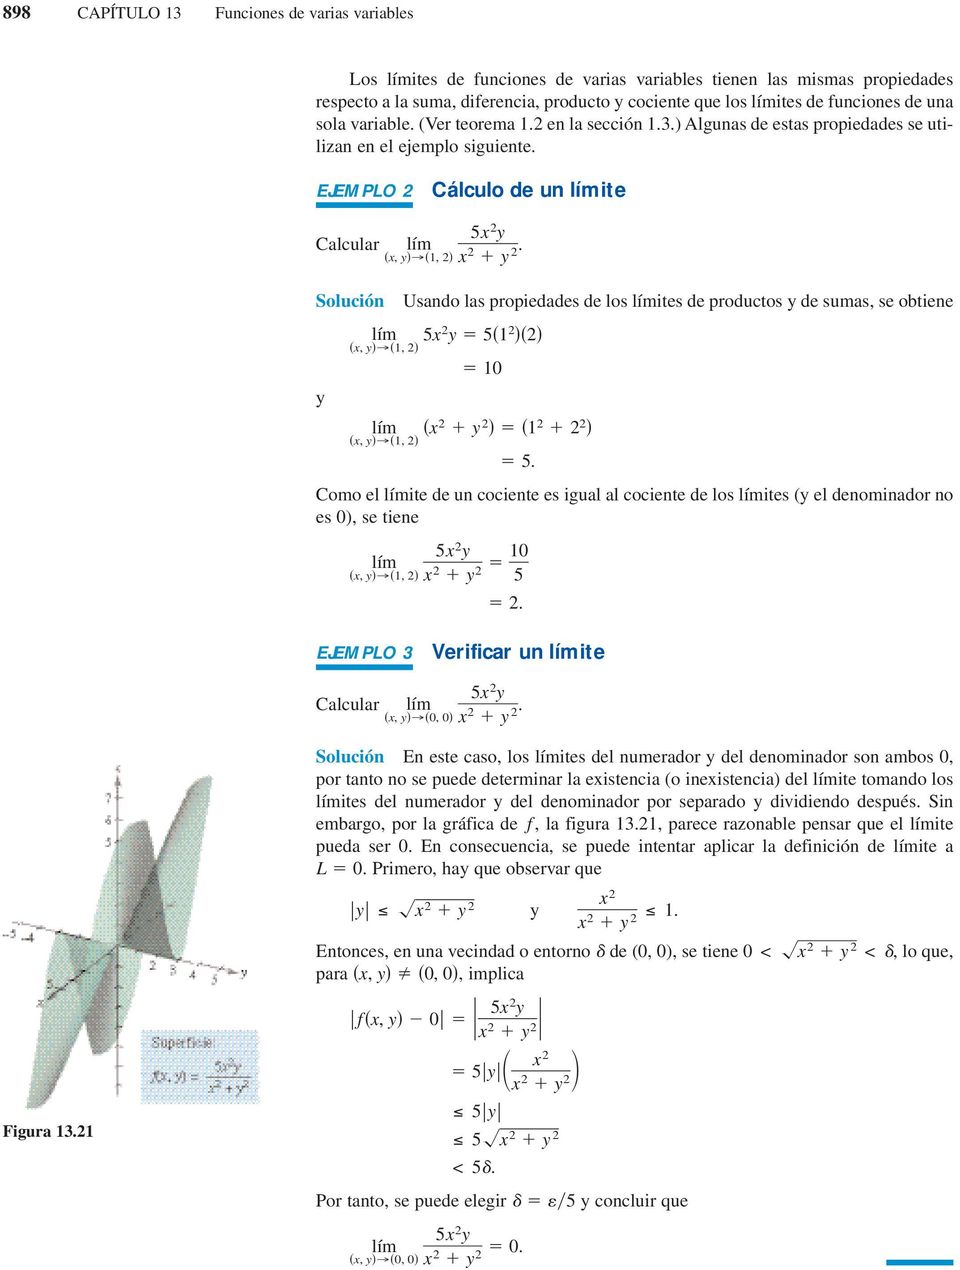 EJEMPLO 2 Cálculo de un límite Calcular Solución y Usando las propiedades de los límites de productos y de sumas, se obtiene Como el límite de un cociente es igual al cociente de los límites (y el